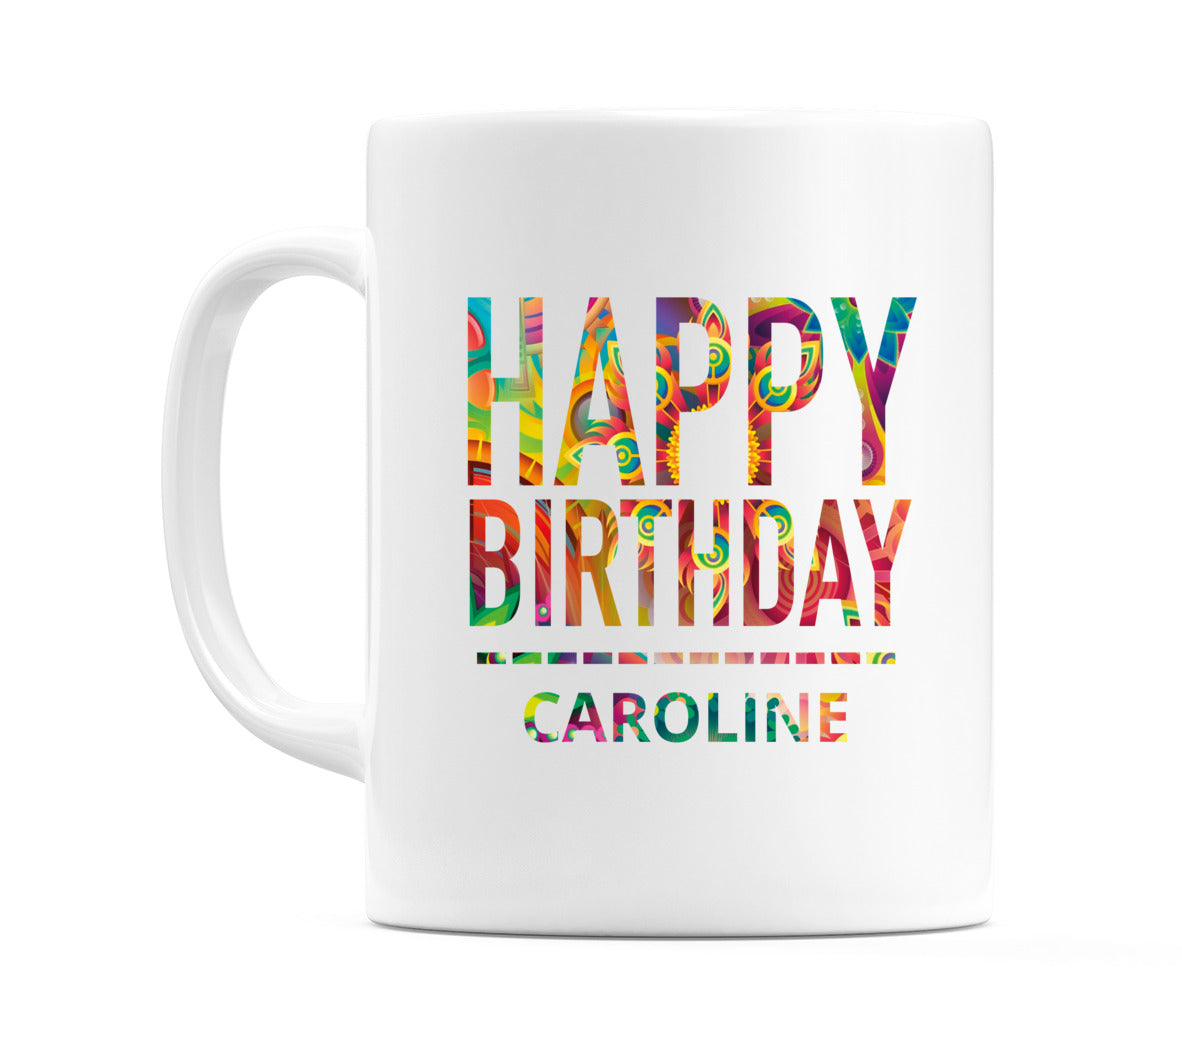 Happy Birthday Caroline (Tie Dye Effect) Mug Cup by WeDoMugs